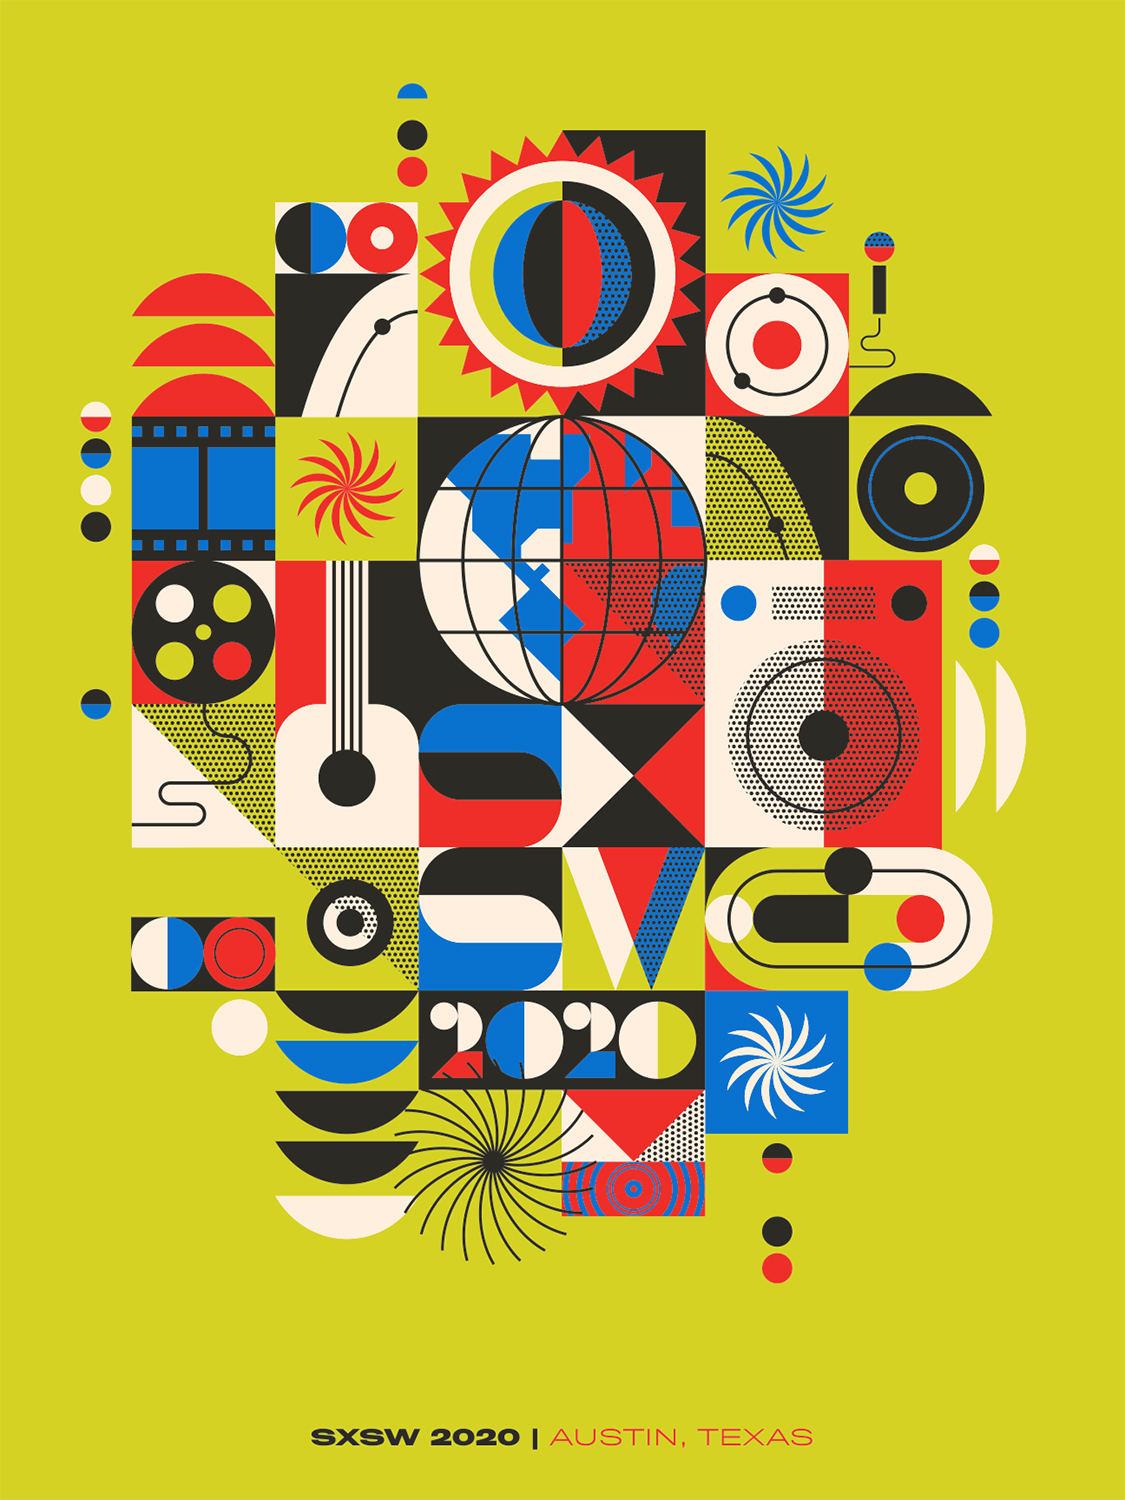 SXSW 2020 poster design by artist Ty Mattson